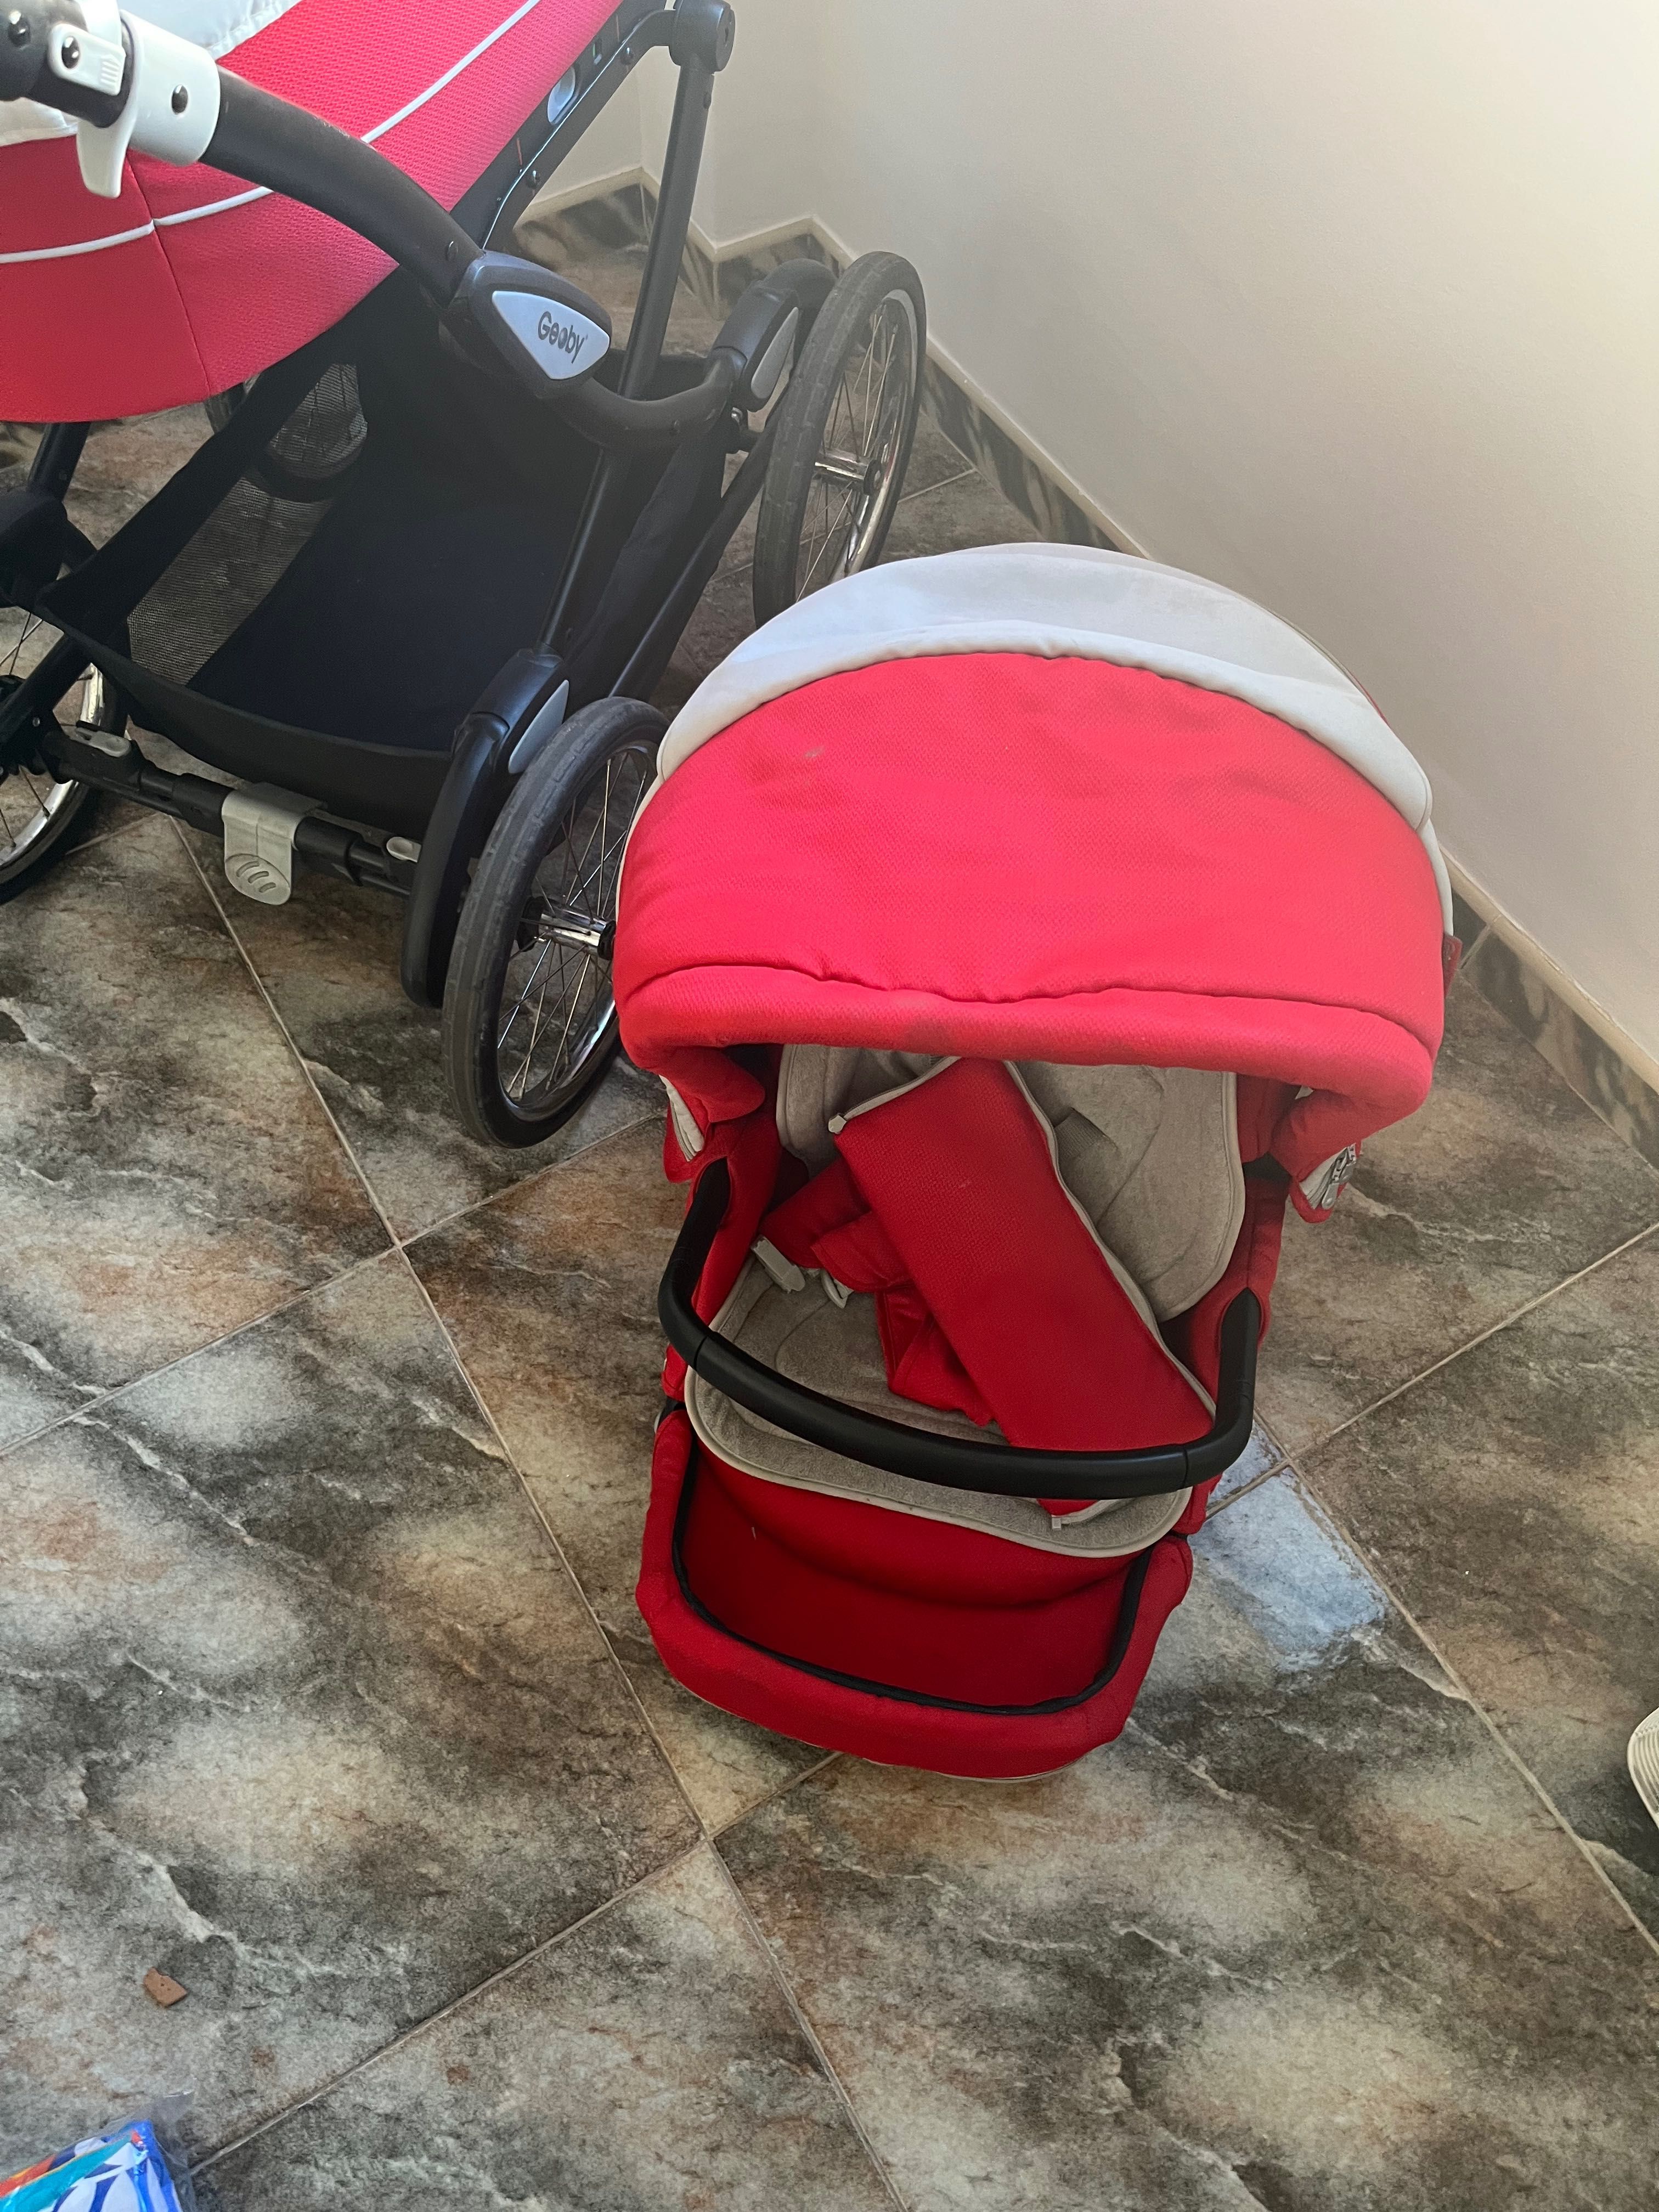 Baby stroller/pram